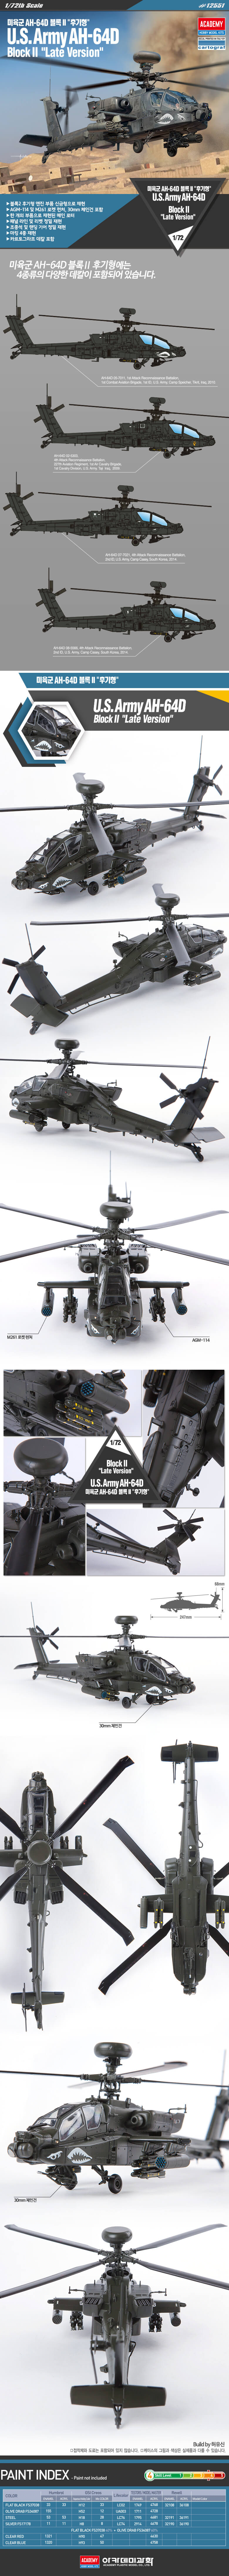 โมเดลเฮลิคอปเตอร์ U.S.Army AH-64D Block II late version 1/72